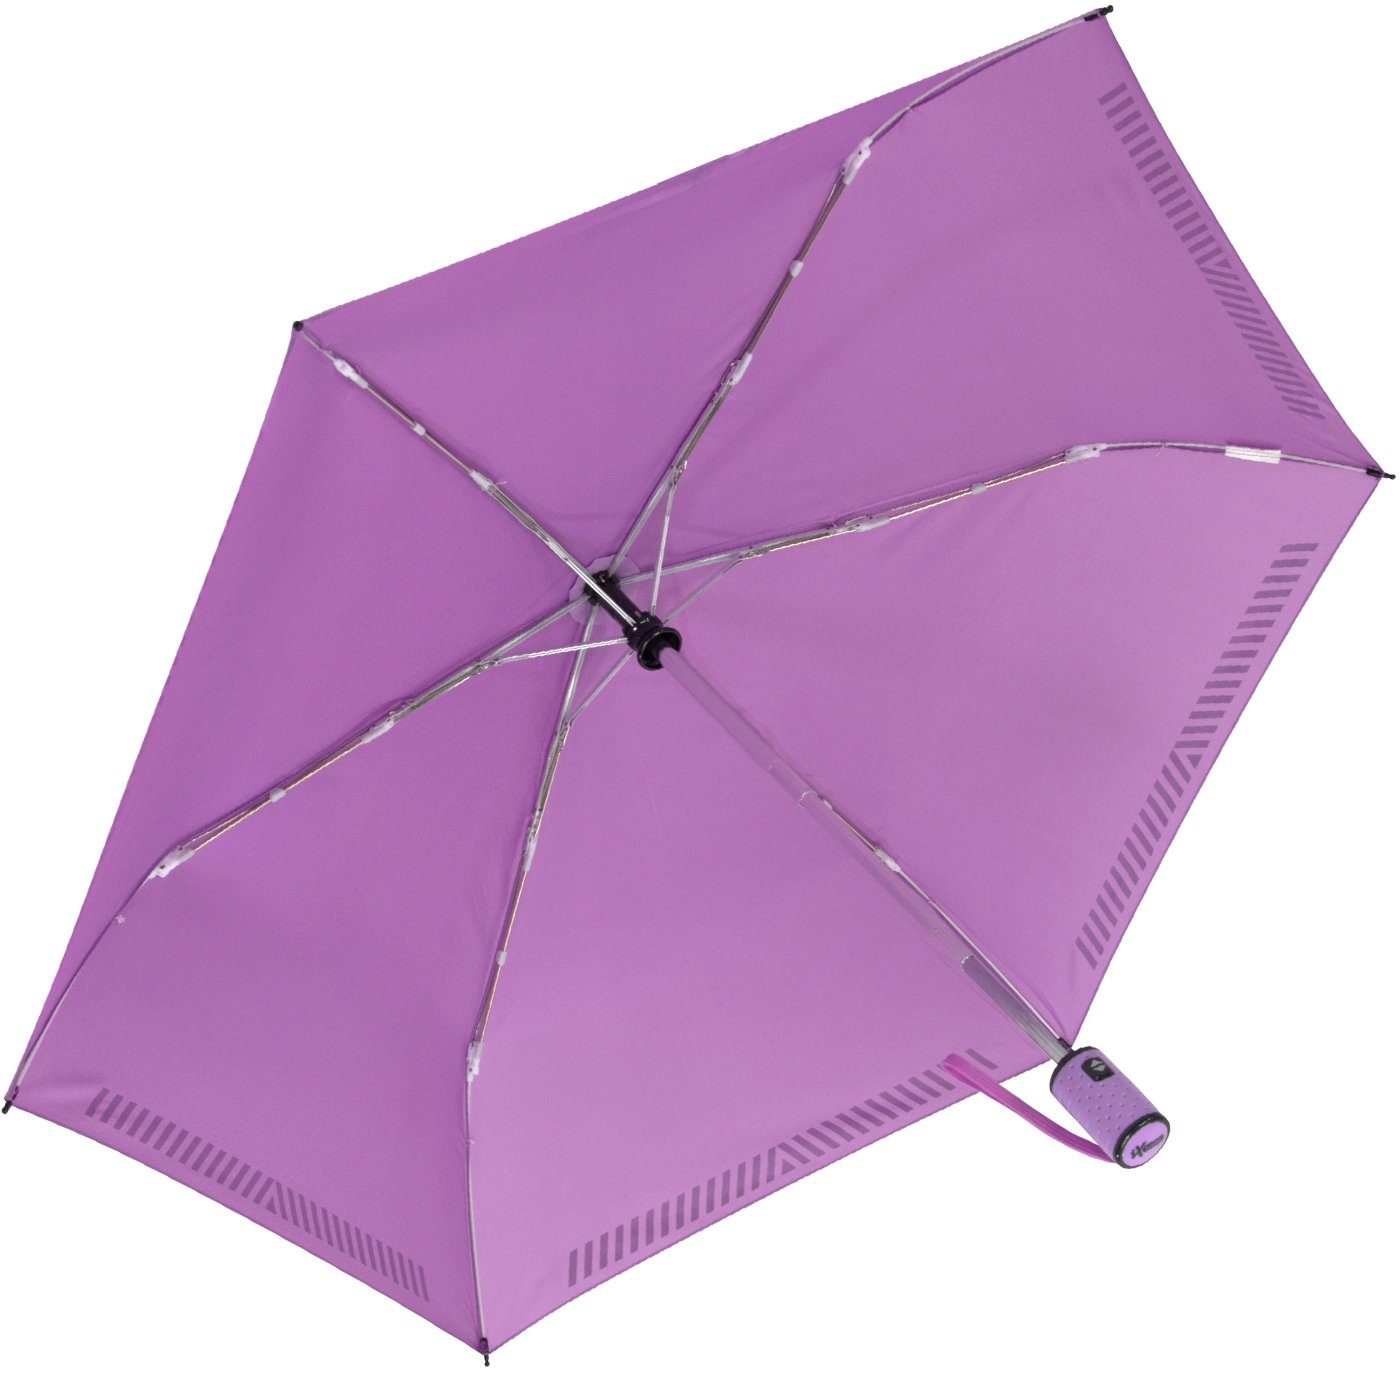 hell-lila Reflex-Streifen Kinderschirm - Sicherheit iX-brella mit reflektierend, Auf-Zu-Automatik, Taschenregenschirm durch